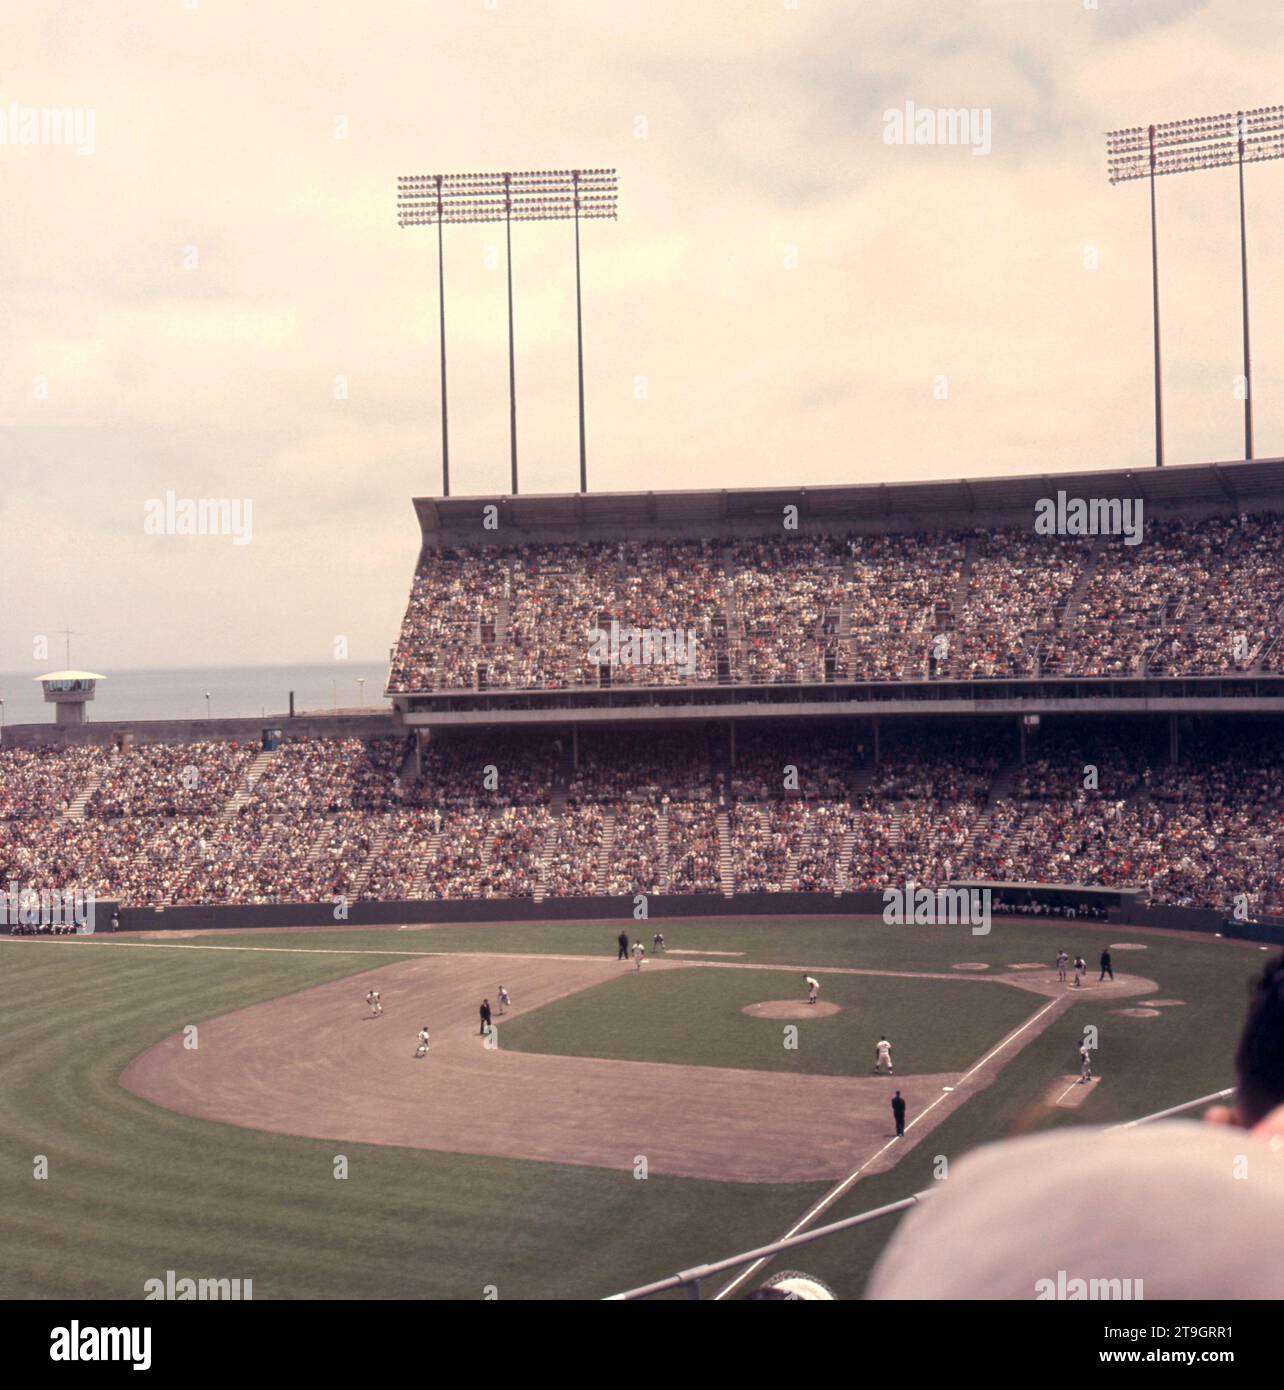 SAN FRANCISCO, CA - 21 MAI : vue générale du match entre les Dodgers de Los Angeles et les Giants de San Francisco lors d'un match MLB le 21 mai 1961 au Candlestick Park à San Francisco, en Californie. (Photo de Hy Peskin) Banque D'Images